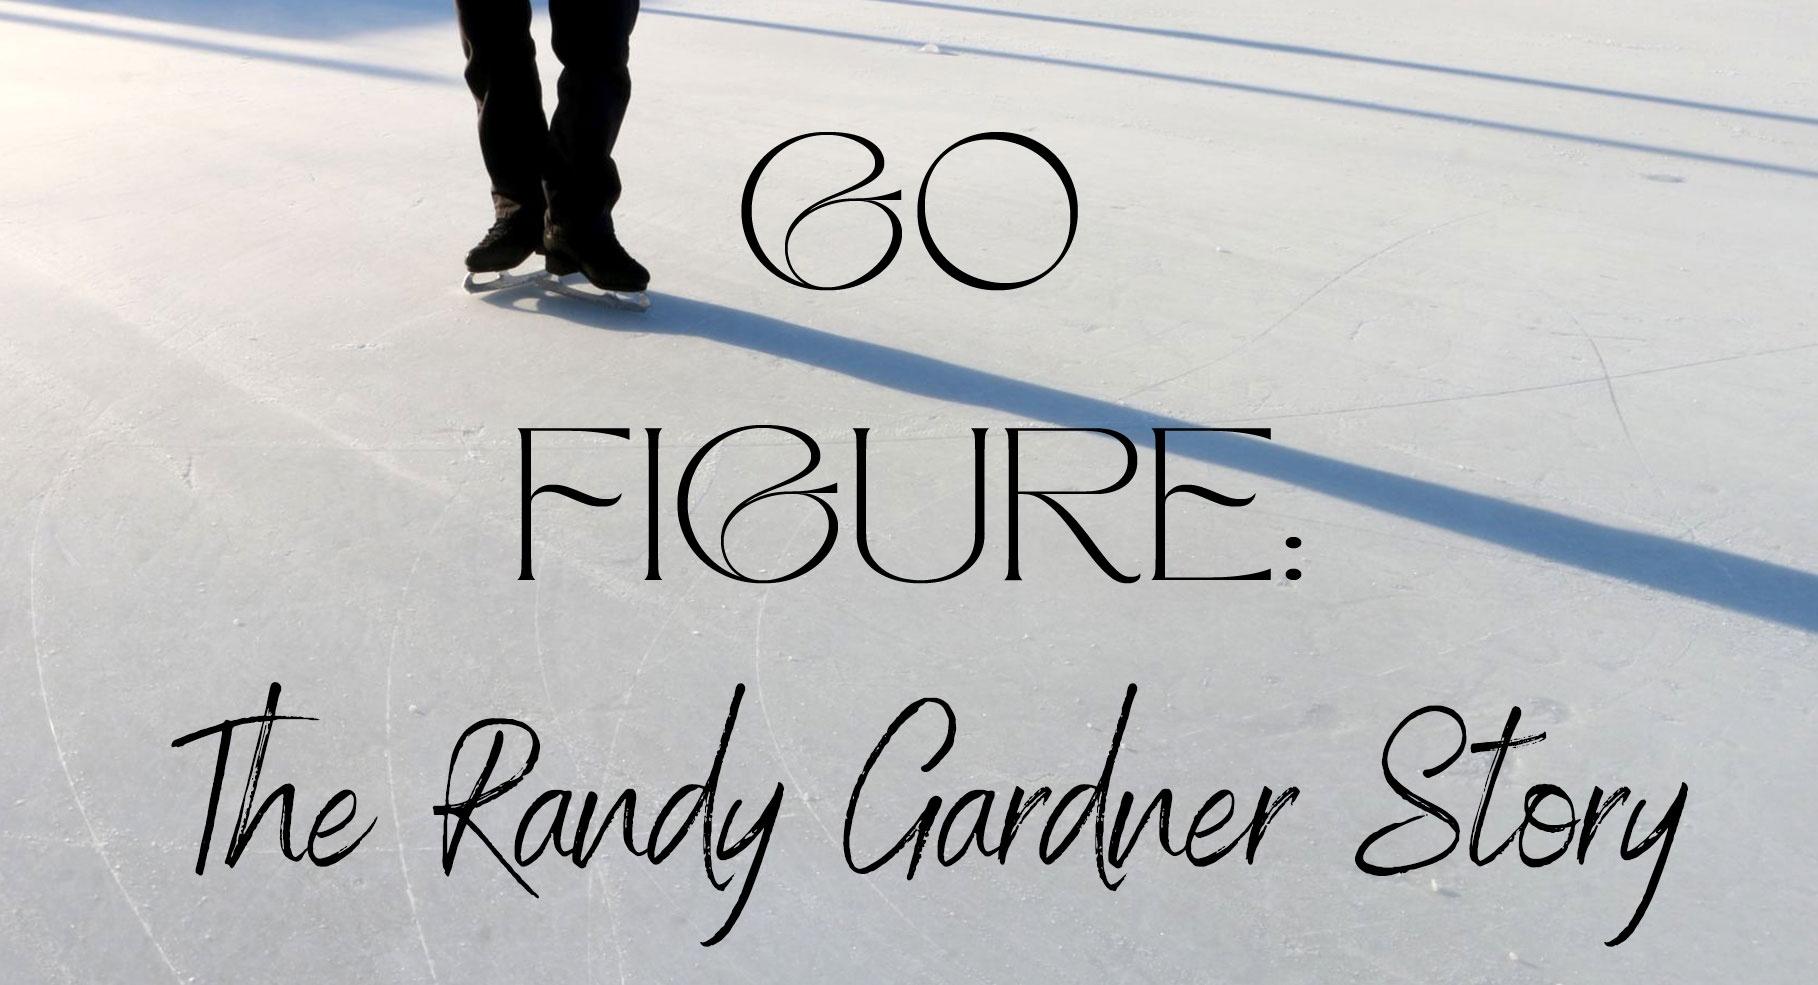 Go Figure The Randy Gardner Story Go Figure The Randy Gardener Story WTTW